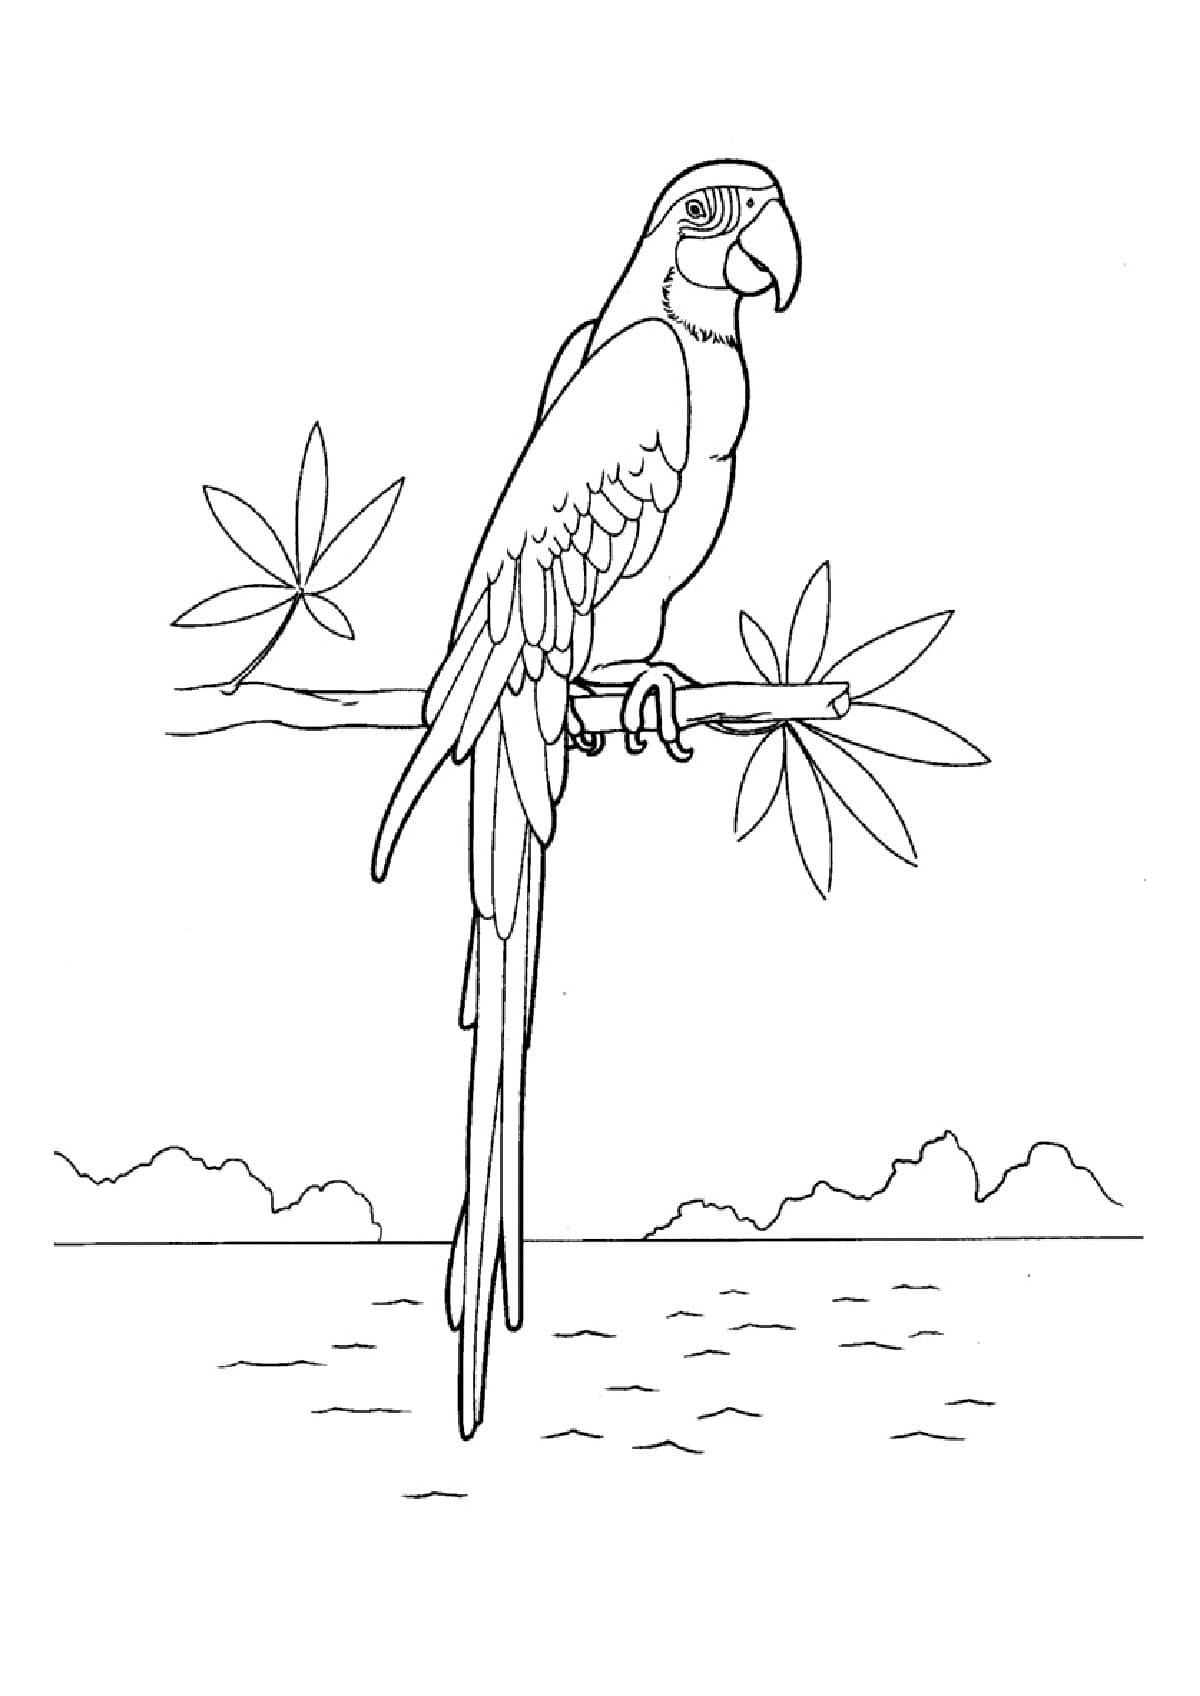 Disegni di Uccelli da colorare. 75 immagini per la stampa gratuita